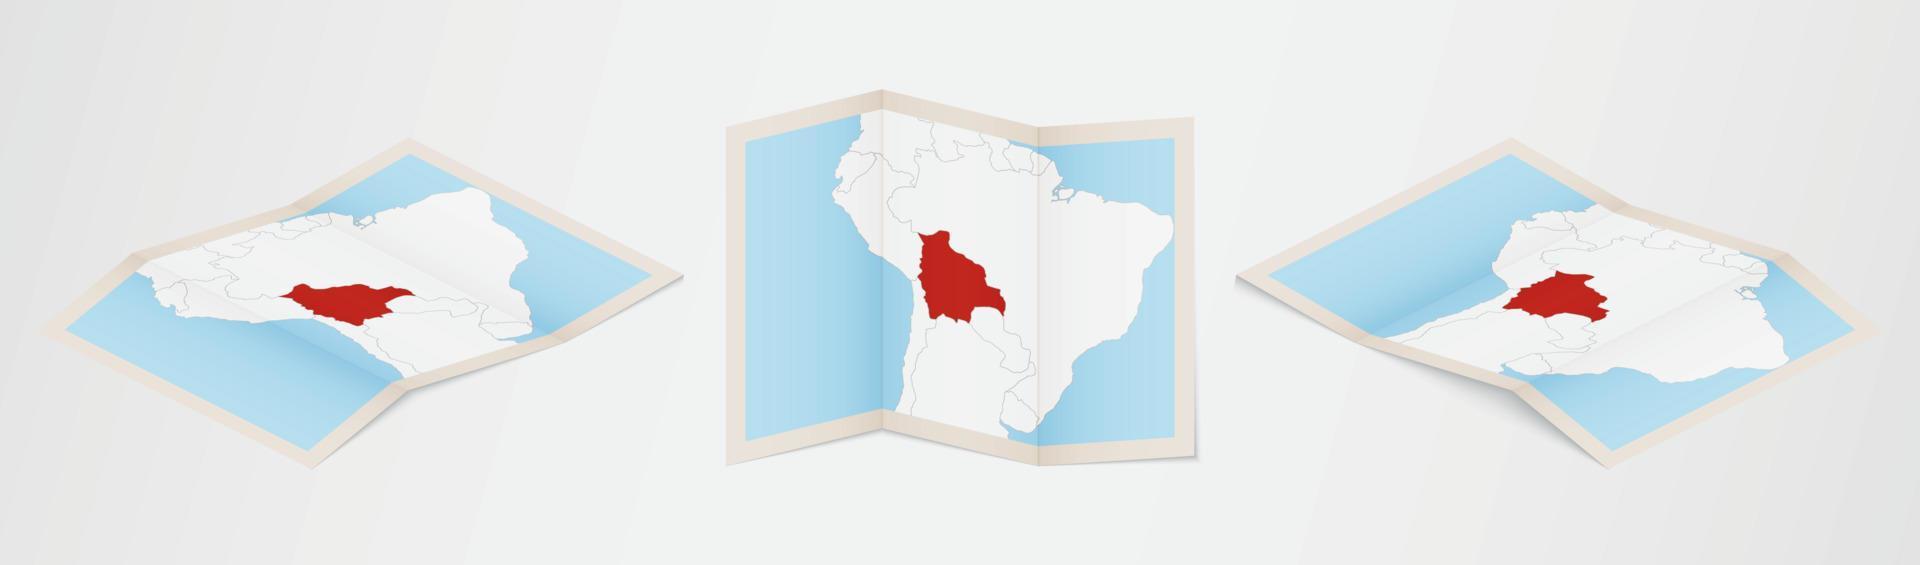 carte pliée de la bolivie en trois versions différentes. vecteur